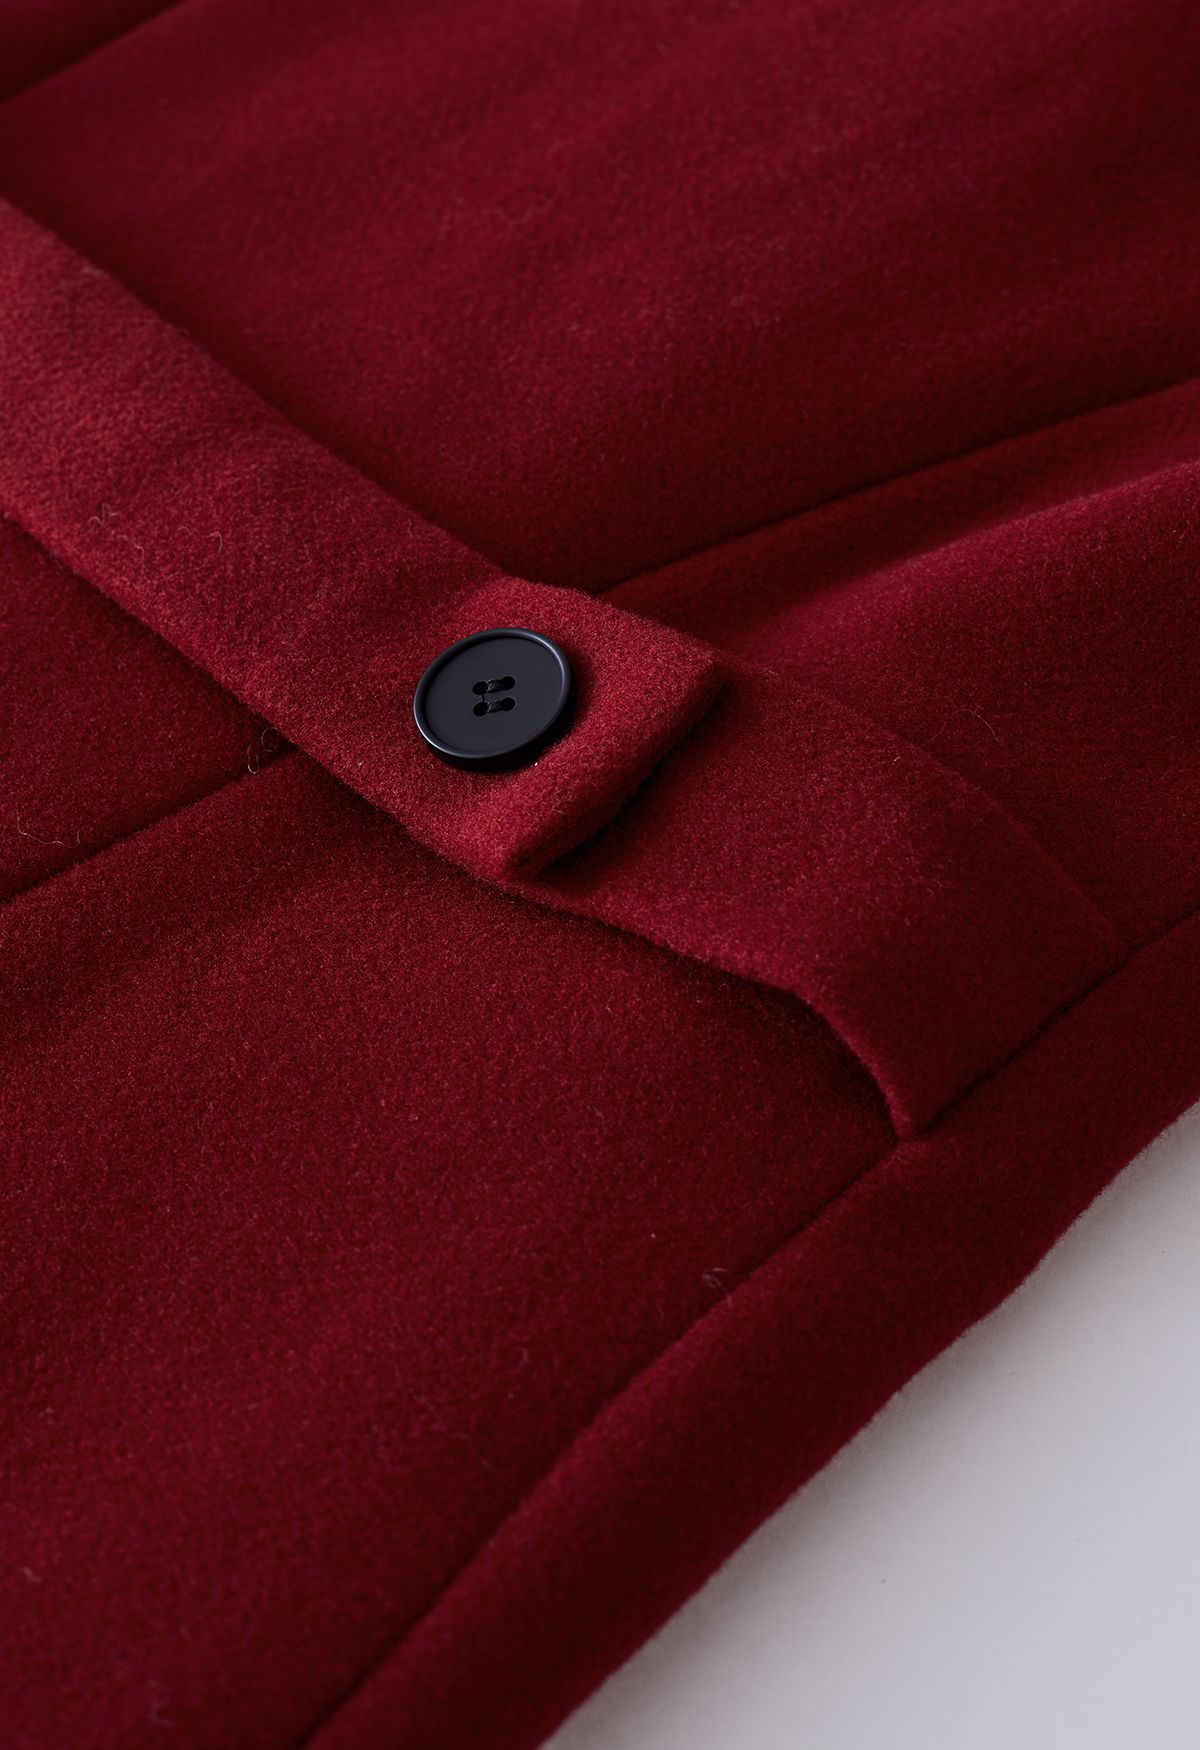 Manteau long évasé à double boutonnage et revers larges en rouge